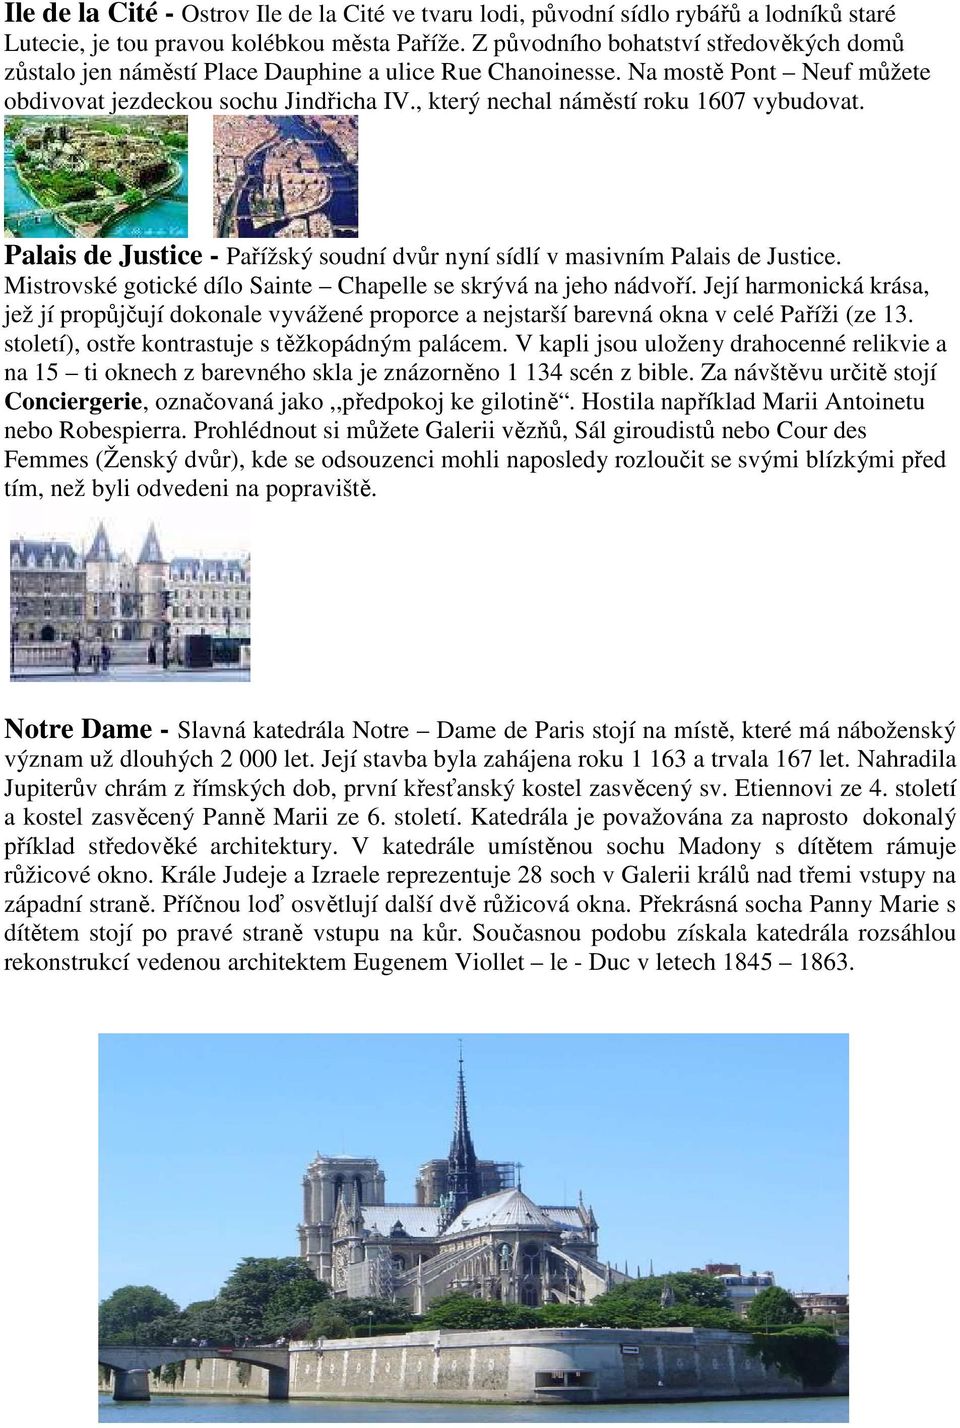 , který nechal náměstí roku 1607 vybudovat. Palais de Justice - Pařížský soudní dvůr nyní sídlí v masivním Palais de Justice. Mistrovské gotické dílo Sainte Chapelle se skrývá na jeho nádvoří.